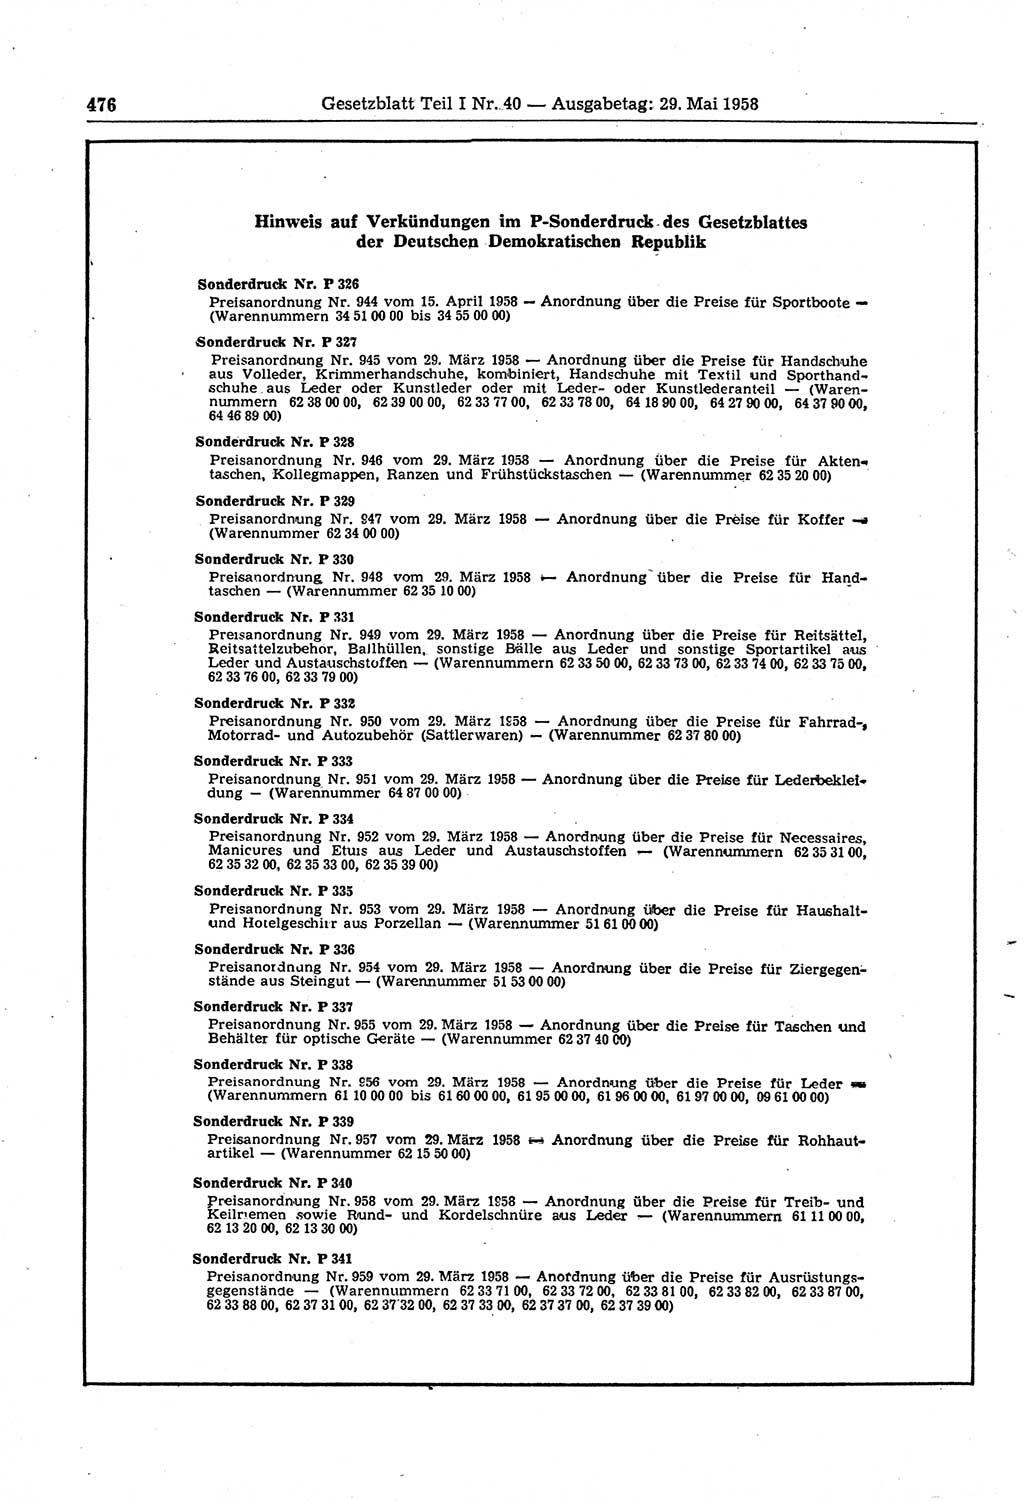 Gesetzblatt (GBl.) der Deutschen Demokratischen Republik (DDR) Teil Ⅰ 1958, Seite 476 (GBl. DDR Ⅰ 1958, S. 476)